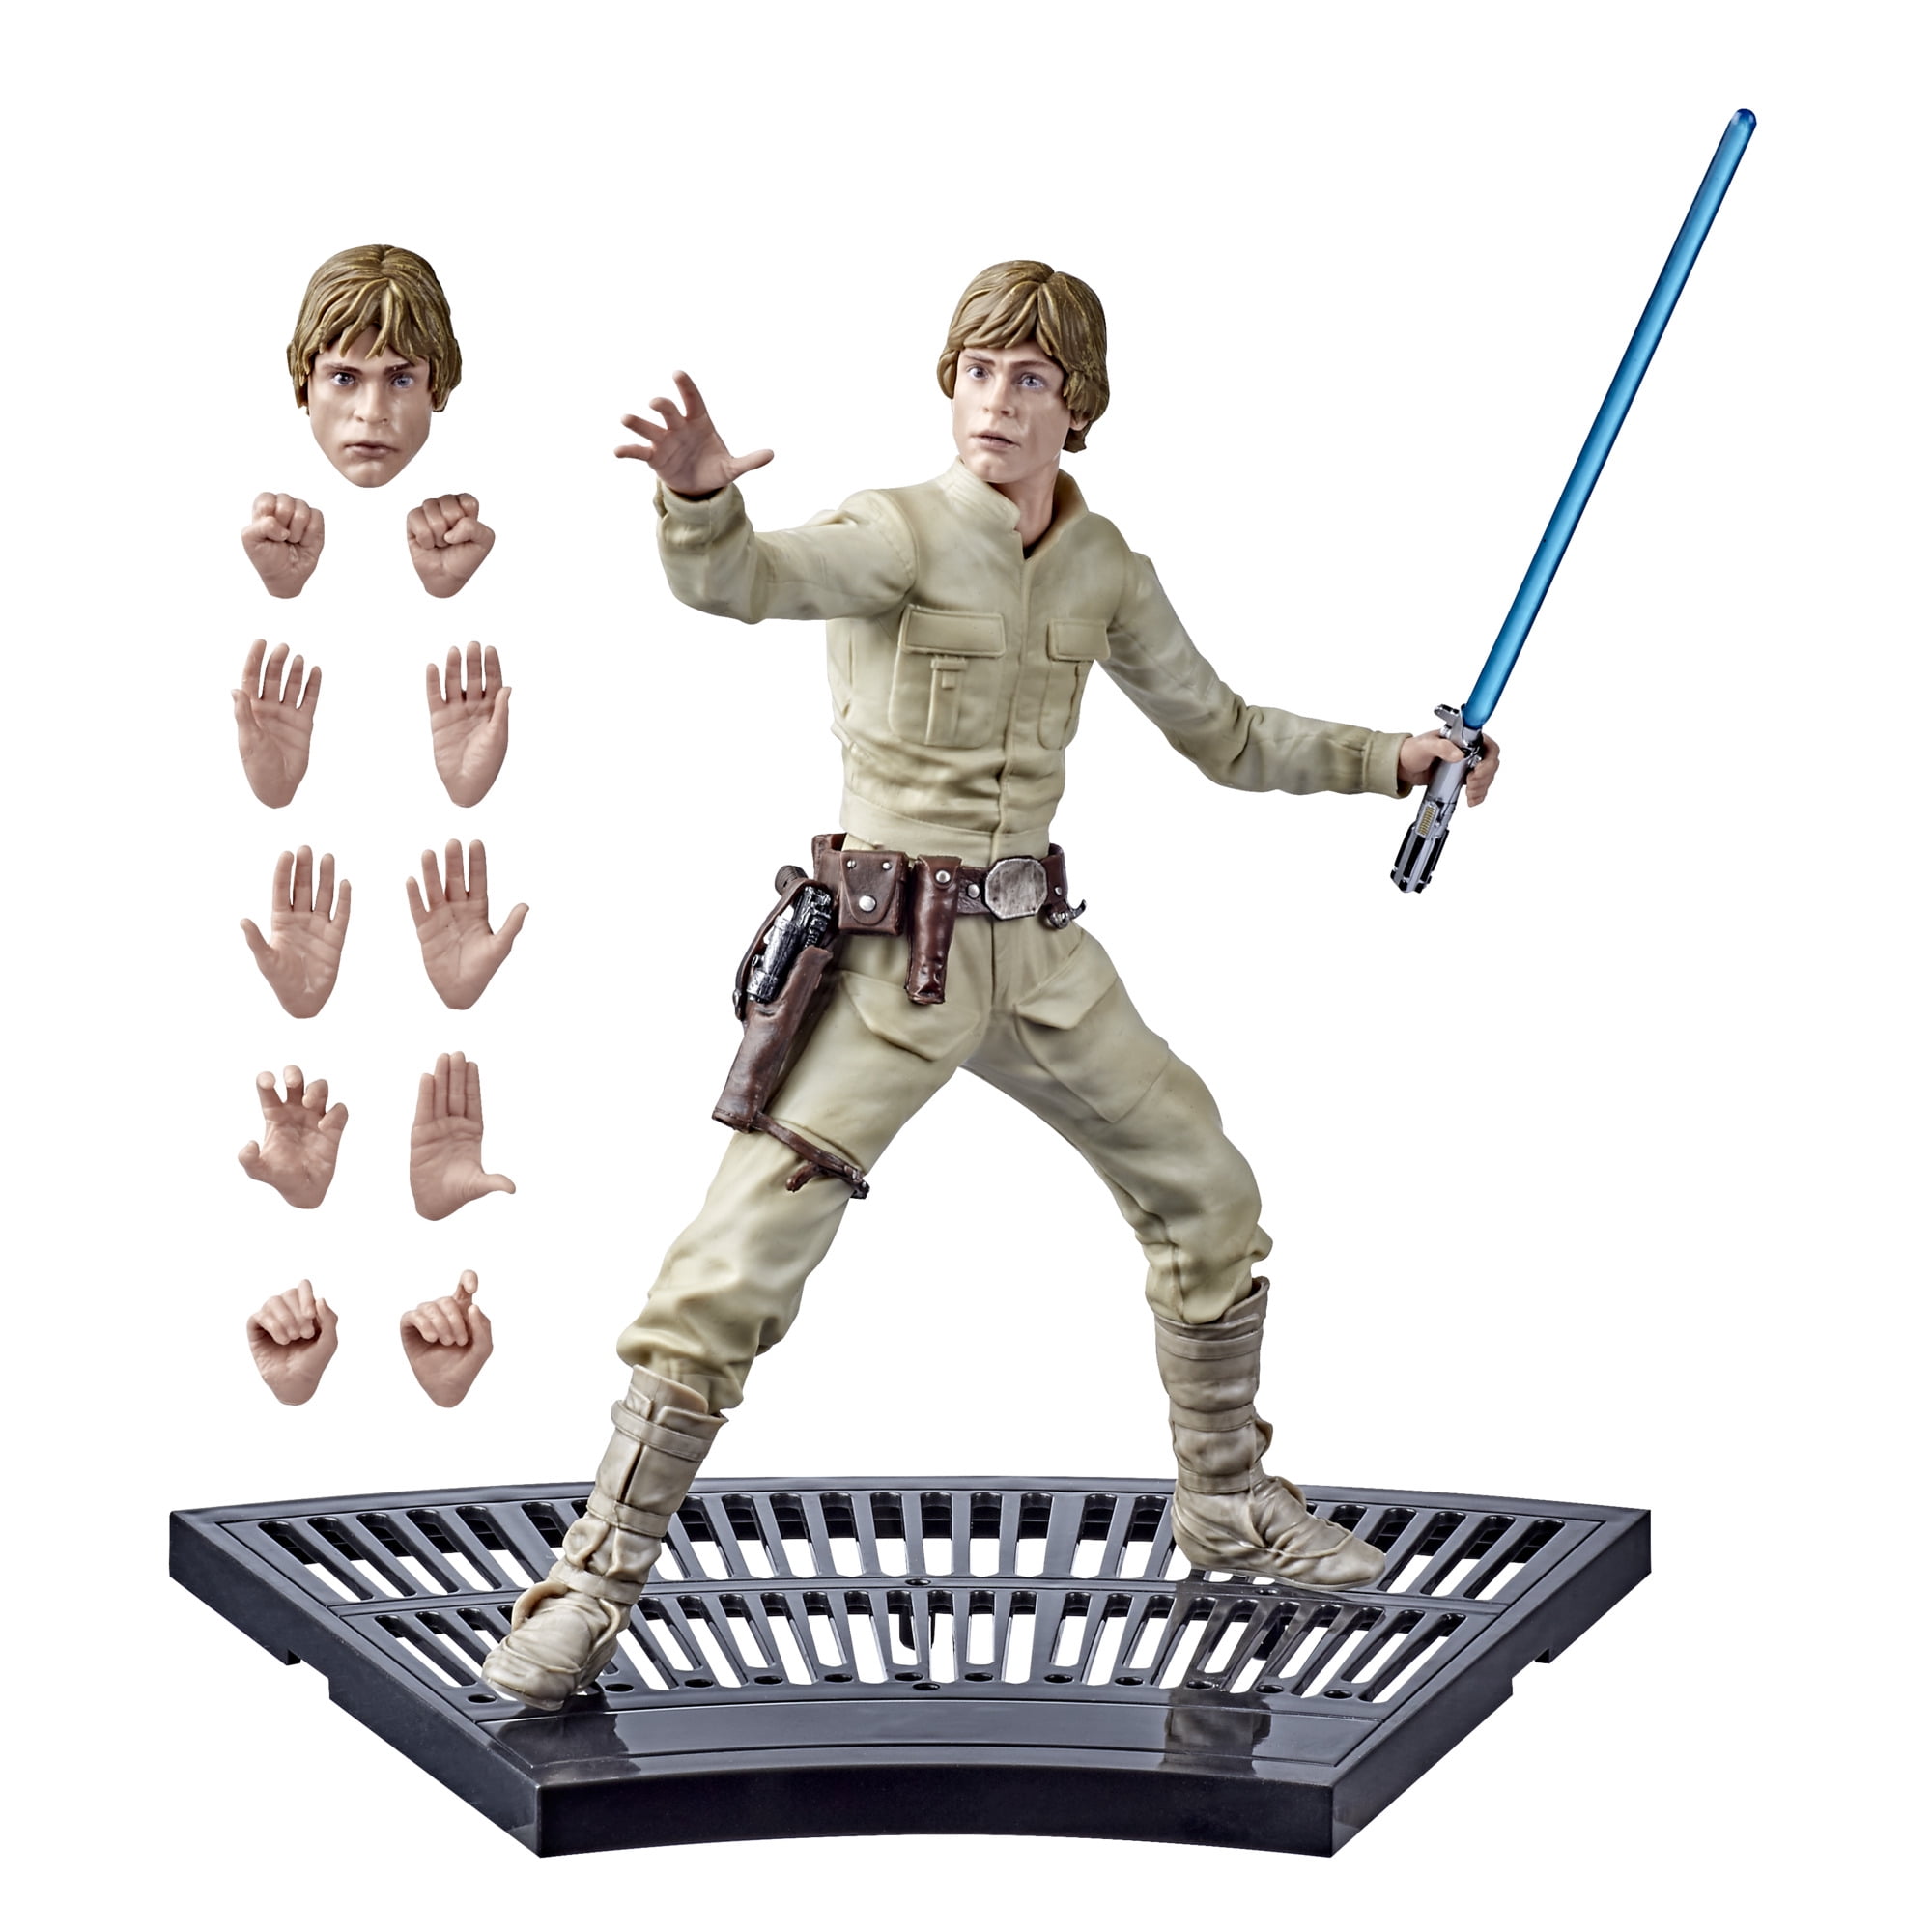 Luke Skywalker - The Force Awakens Skin